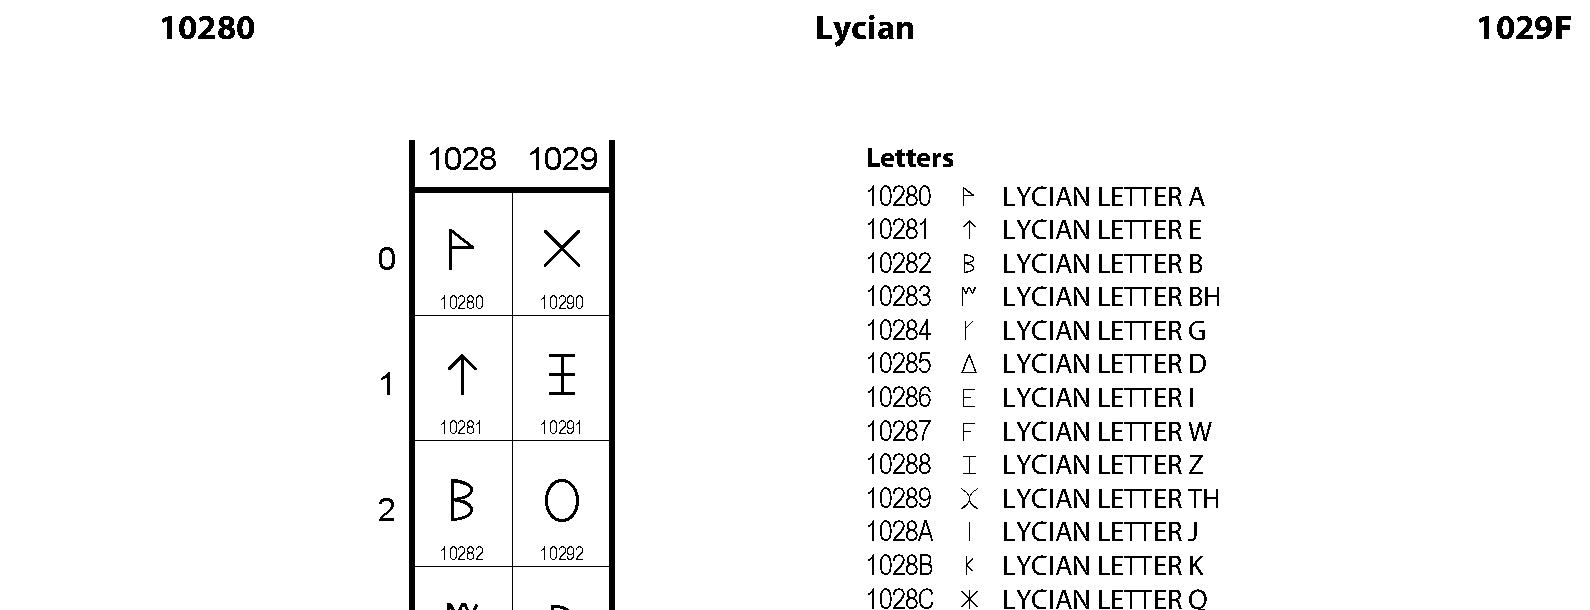 Unicode - Lycian